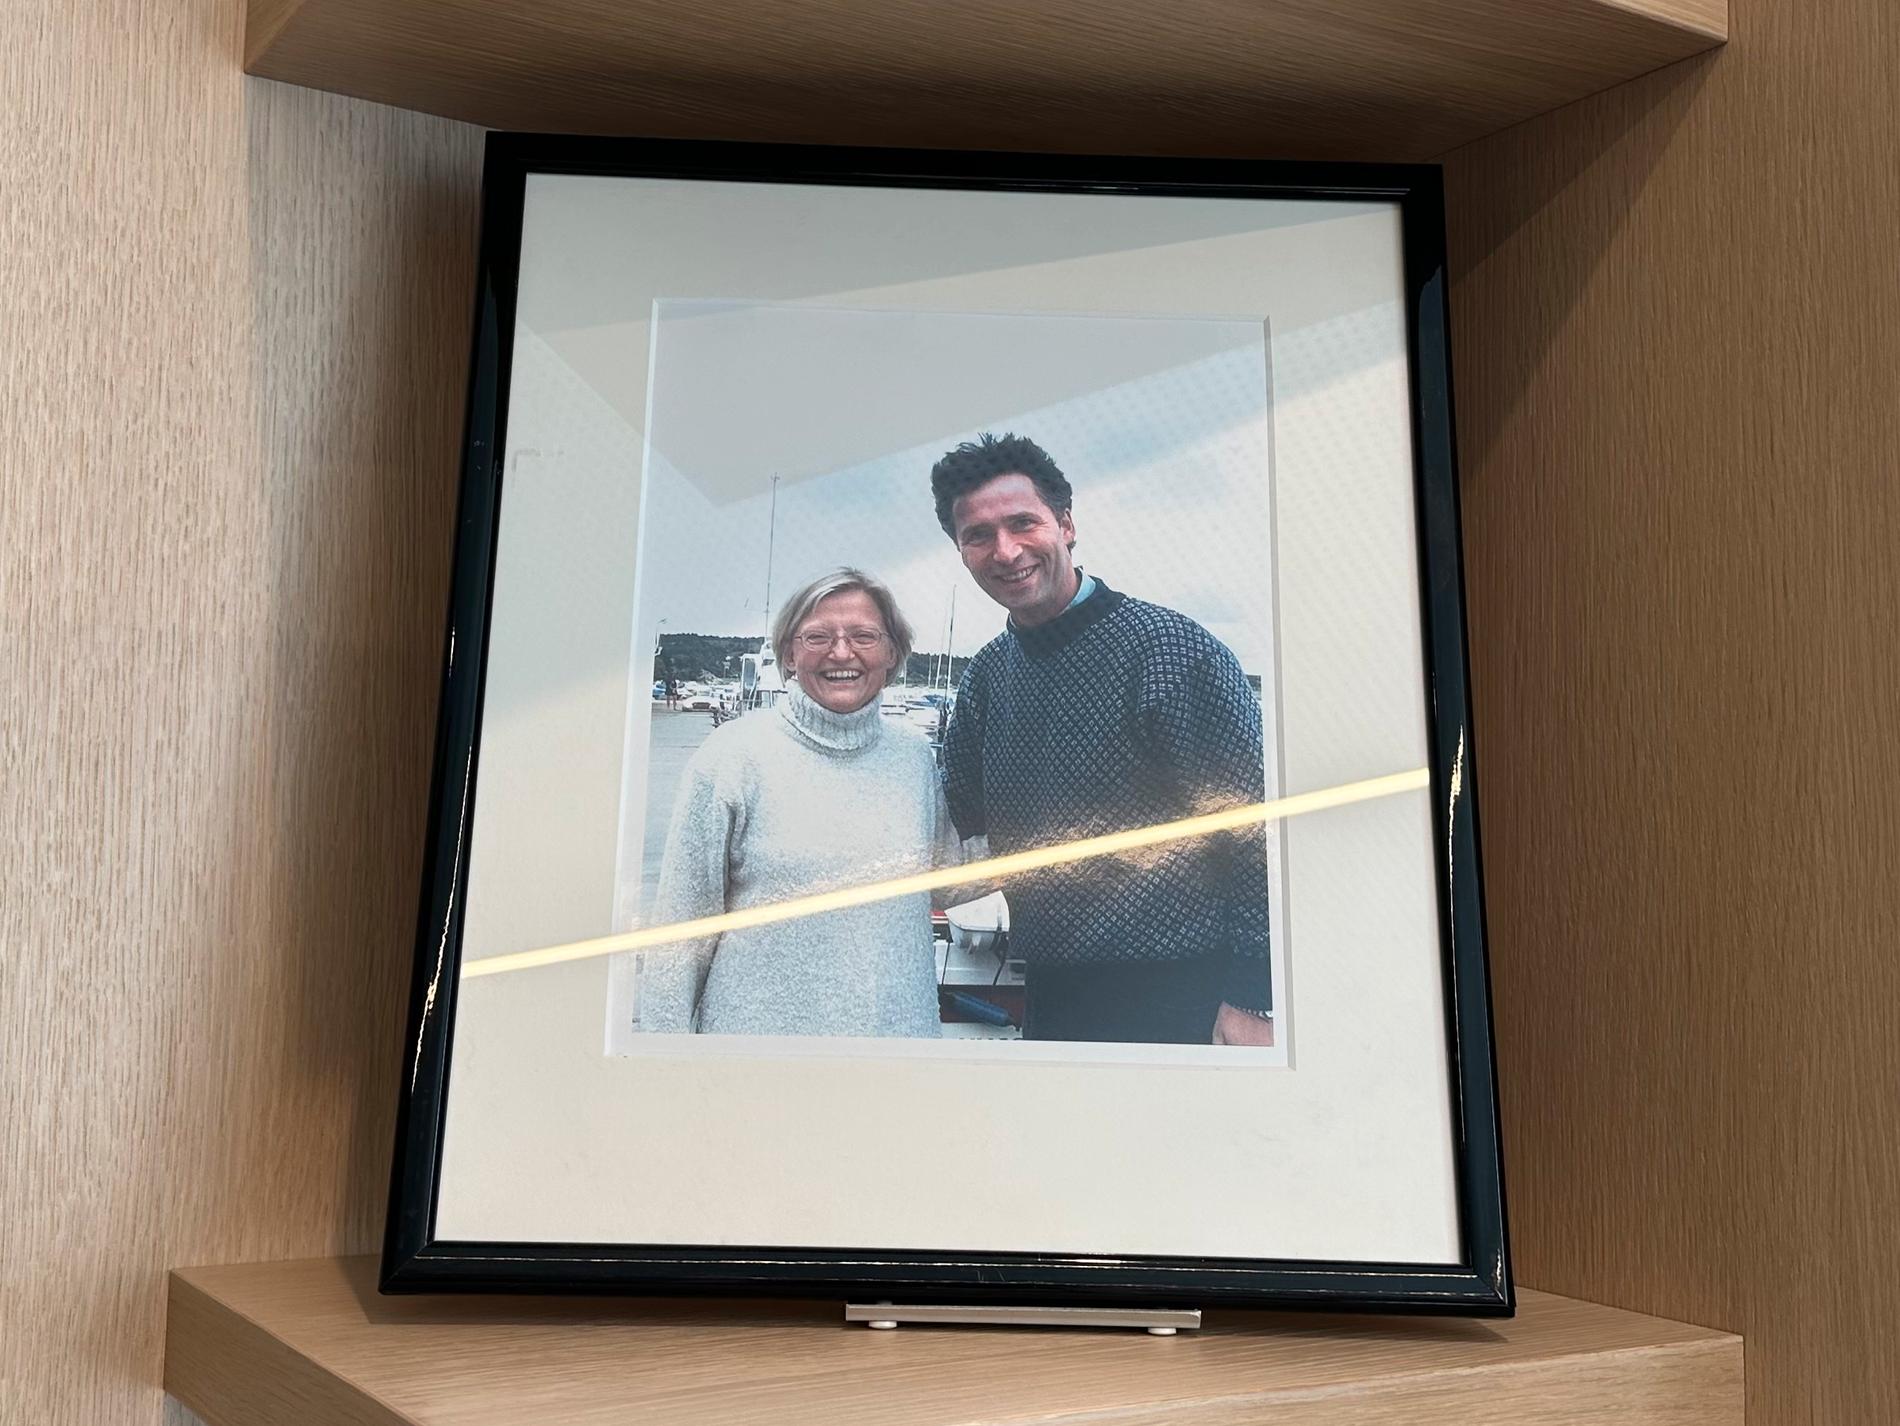 PÅ KONTORET: Jens Stoltenberg har et bilde av Anna Lindh og ham selv fra Hvaler-besøket på kontoret sitt i Natos hovedkvarter i Brussel.